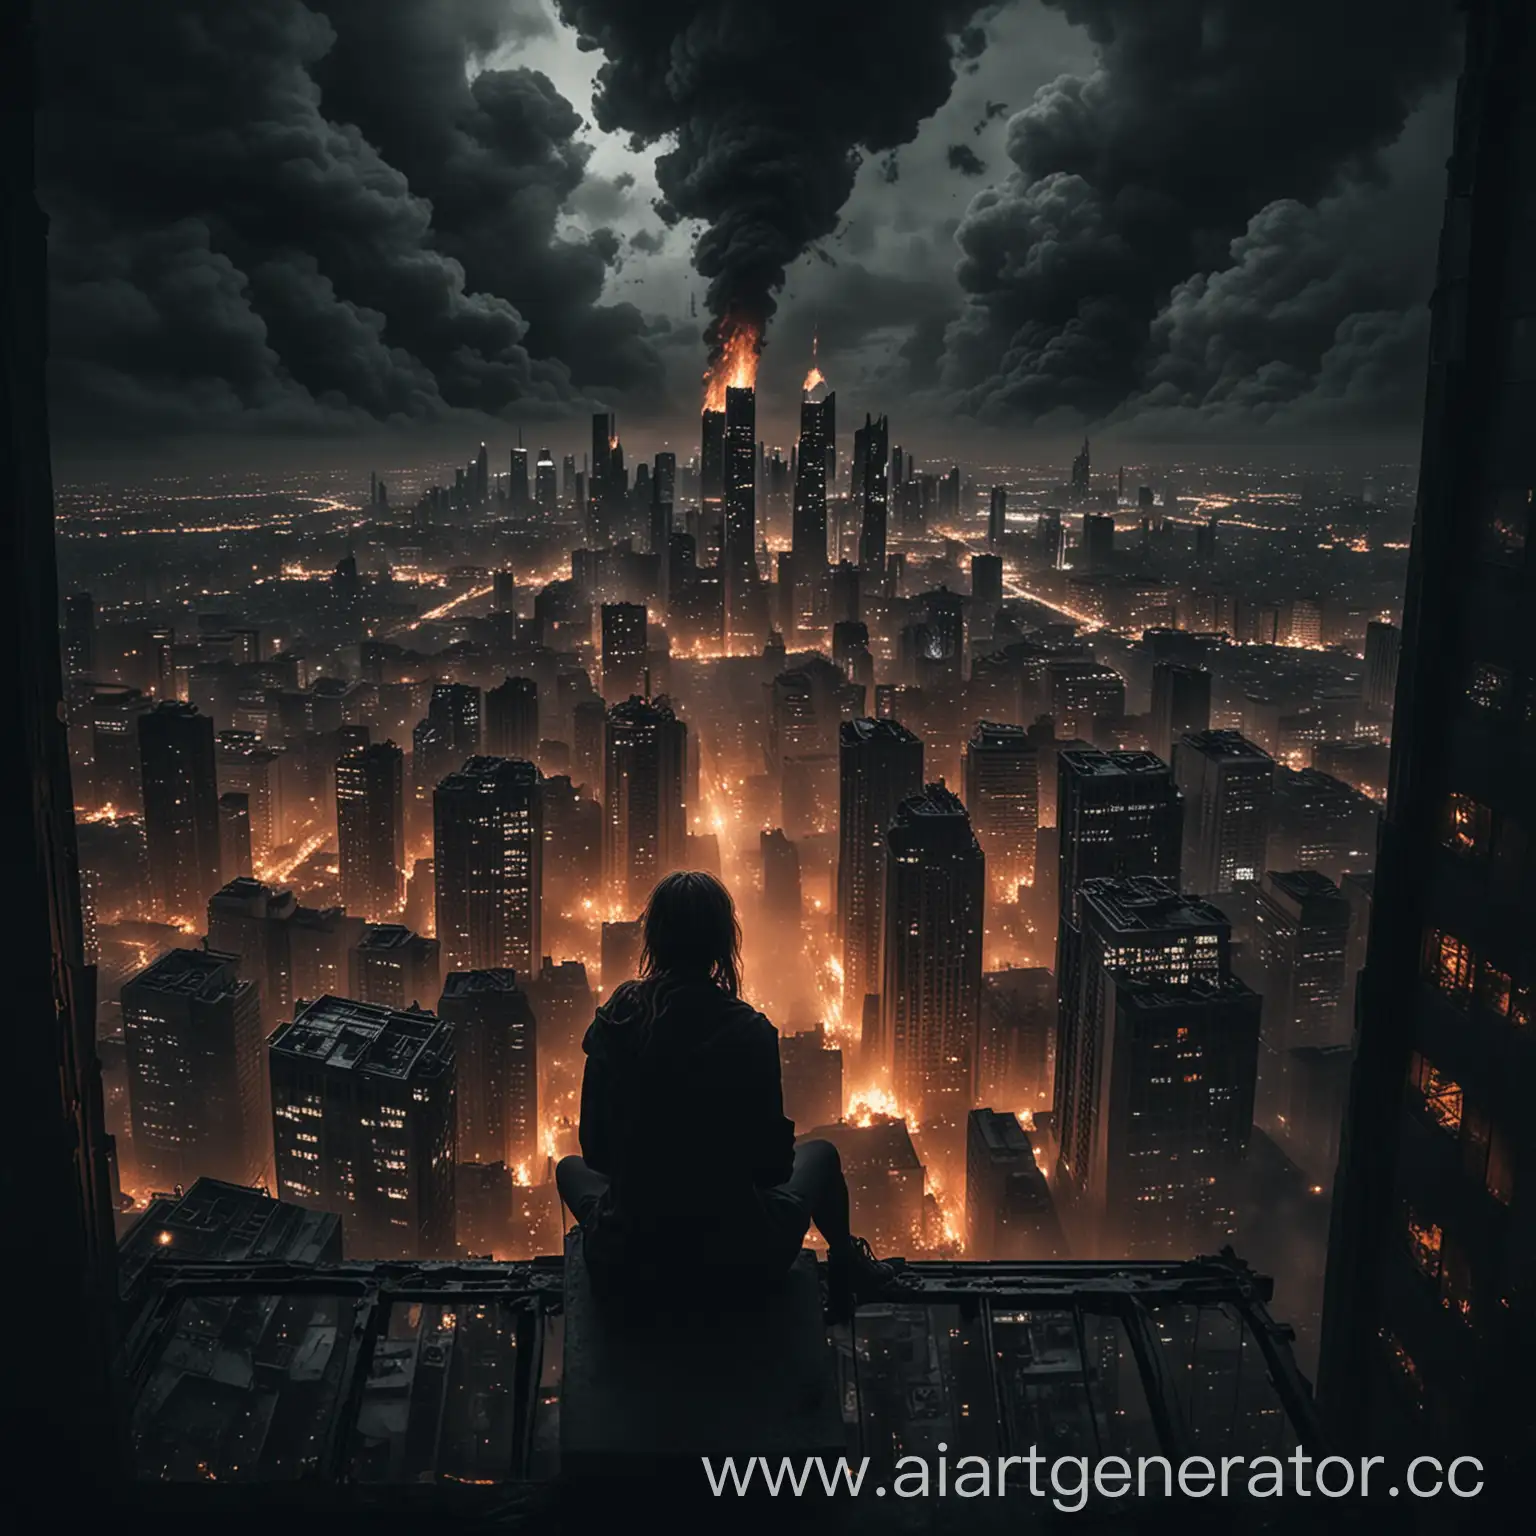 Человек сидит на небоскрёбе и смотрит на ночной город в огне, вокруг апокалипсис всё в мрачных готических тонах